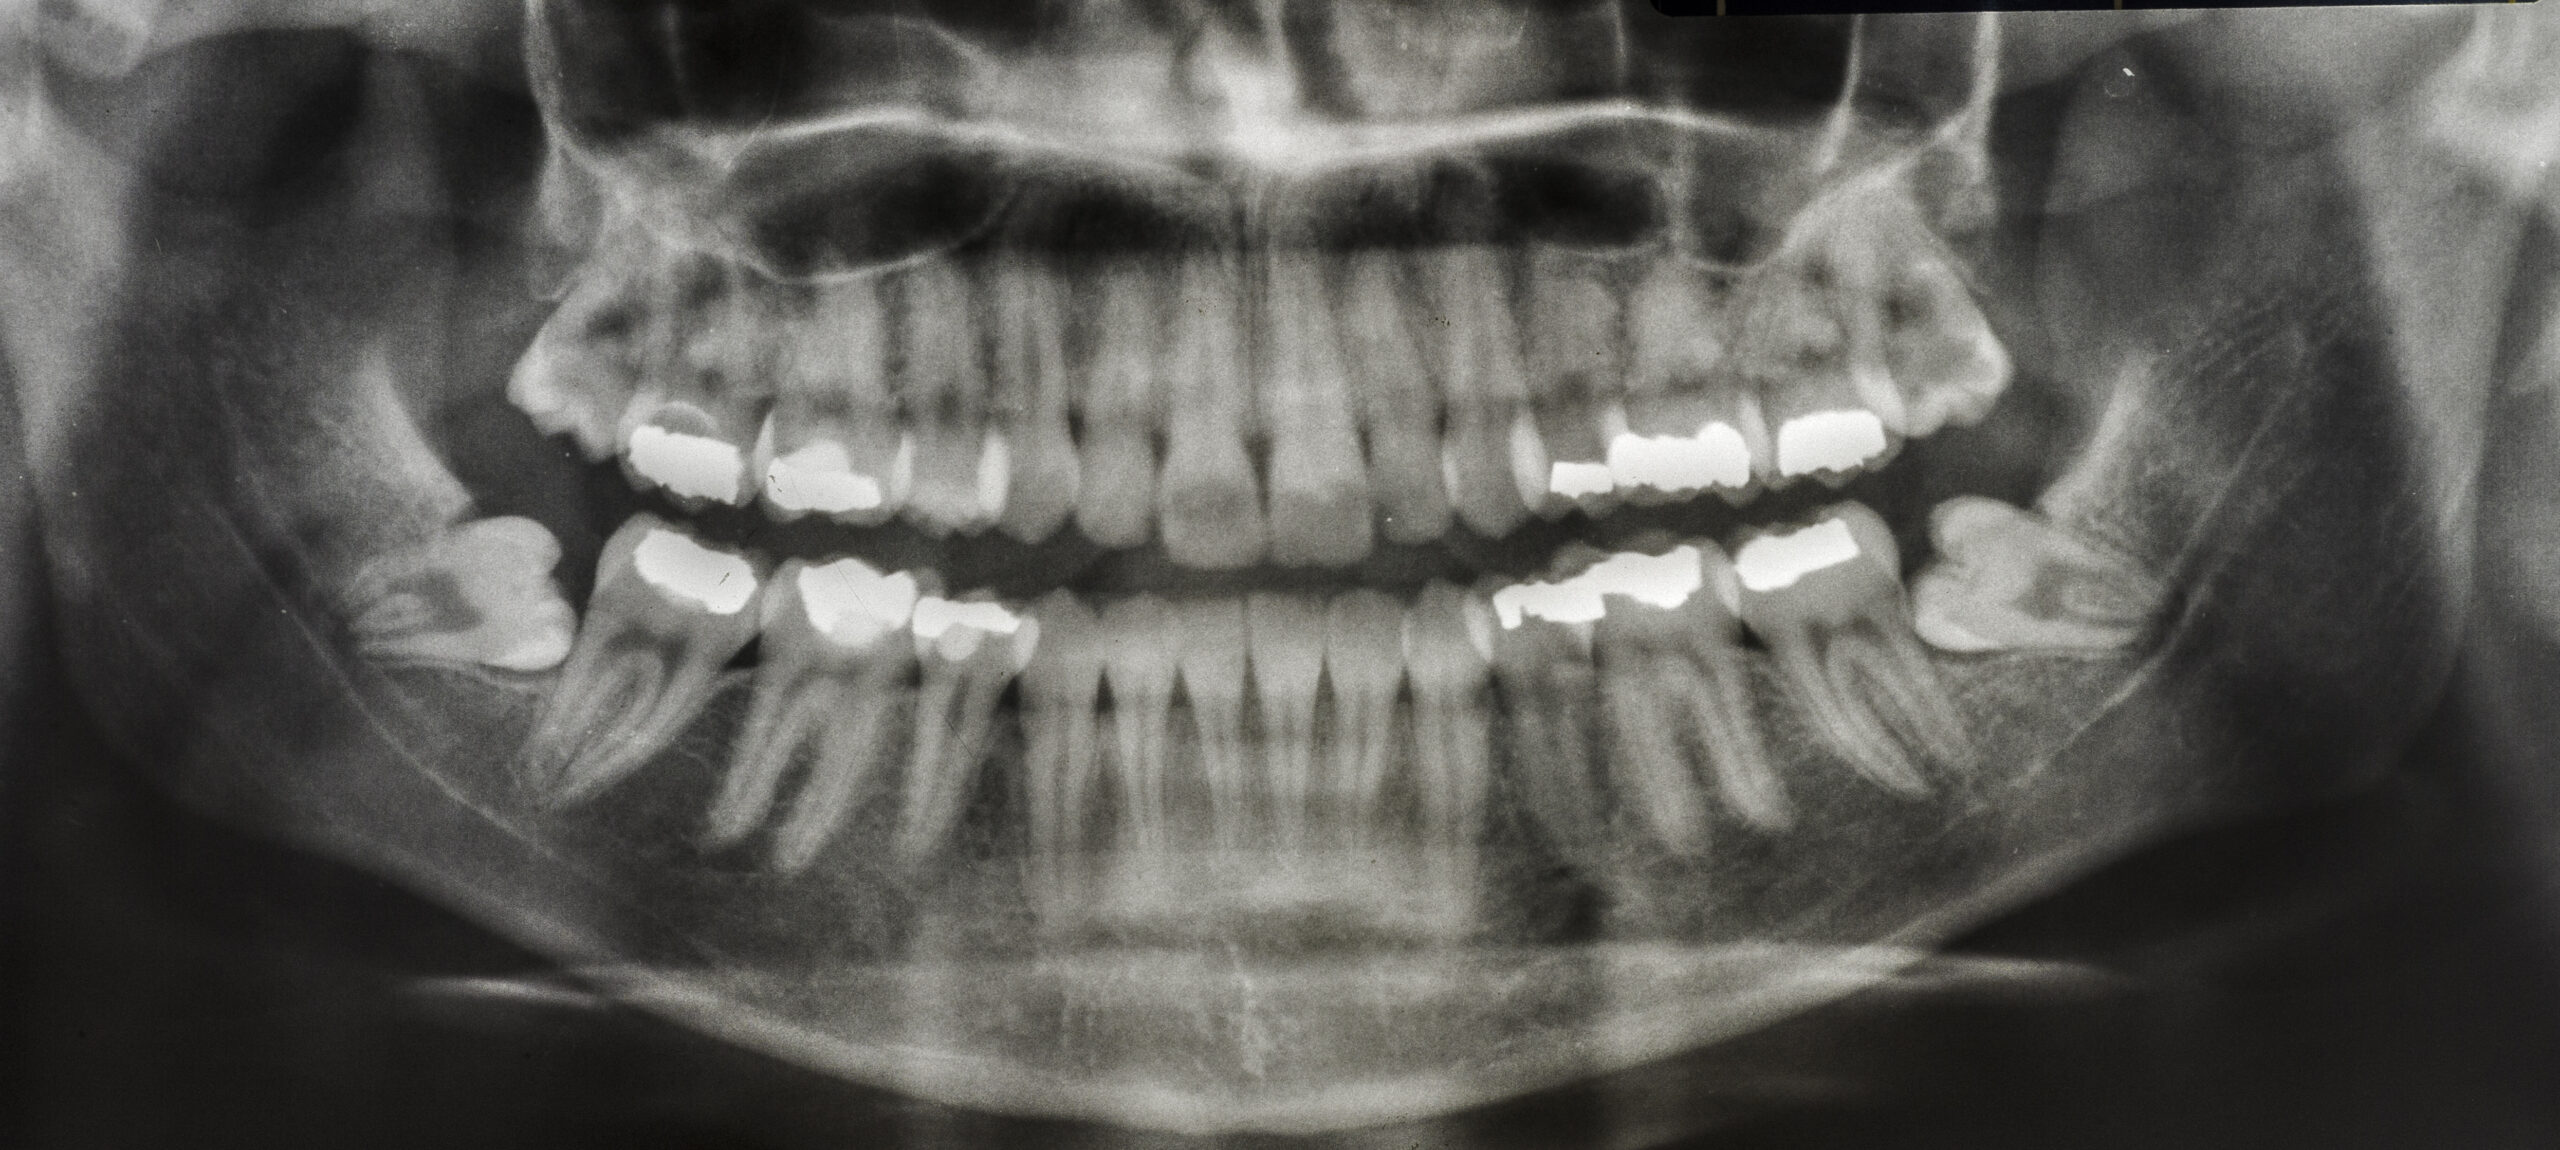 Xray of teeth